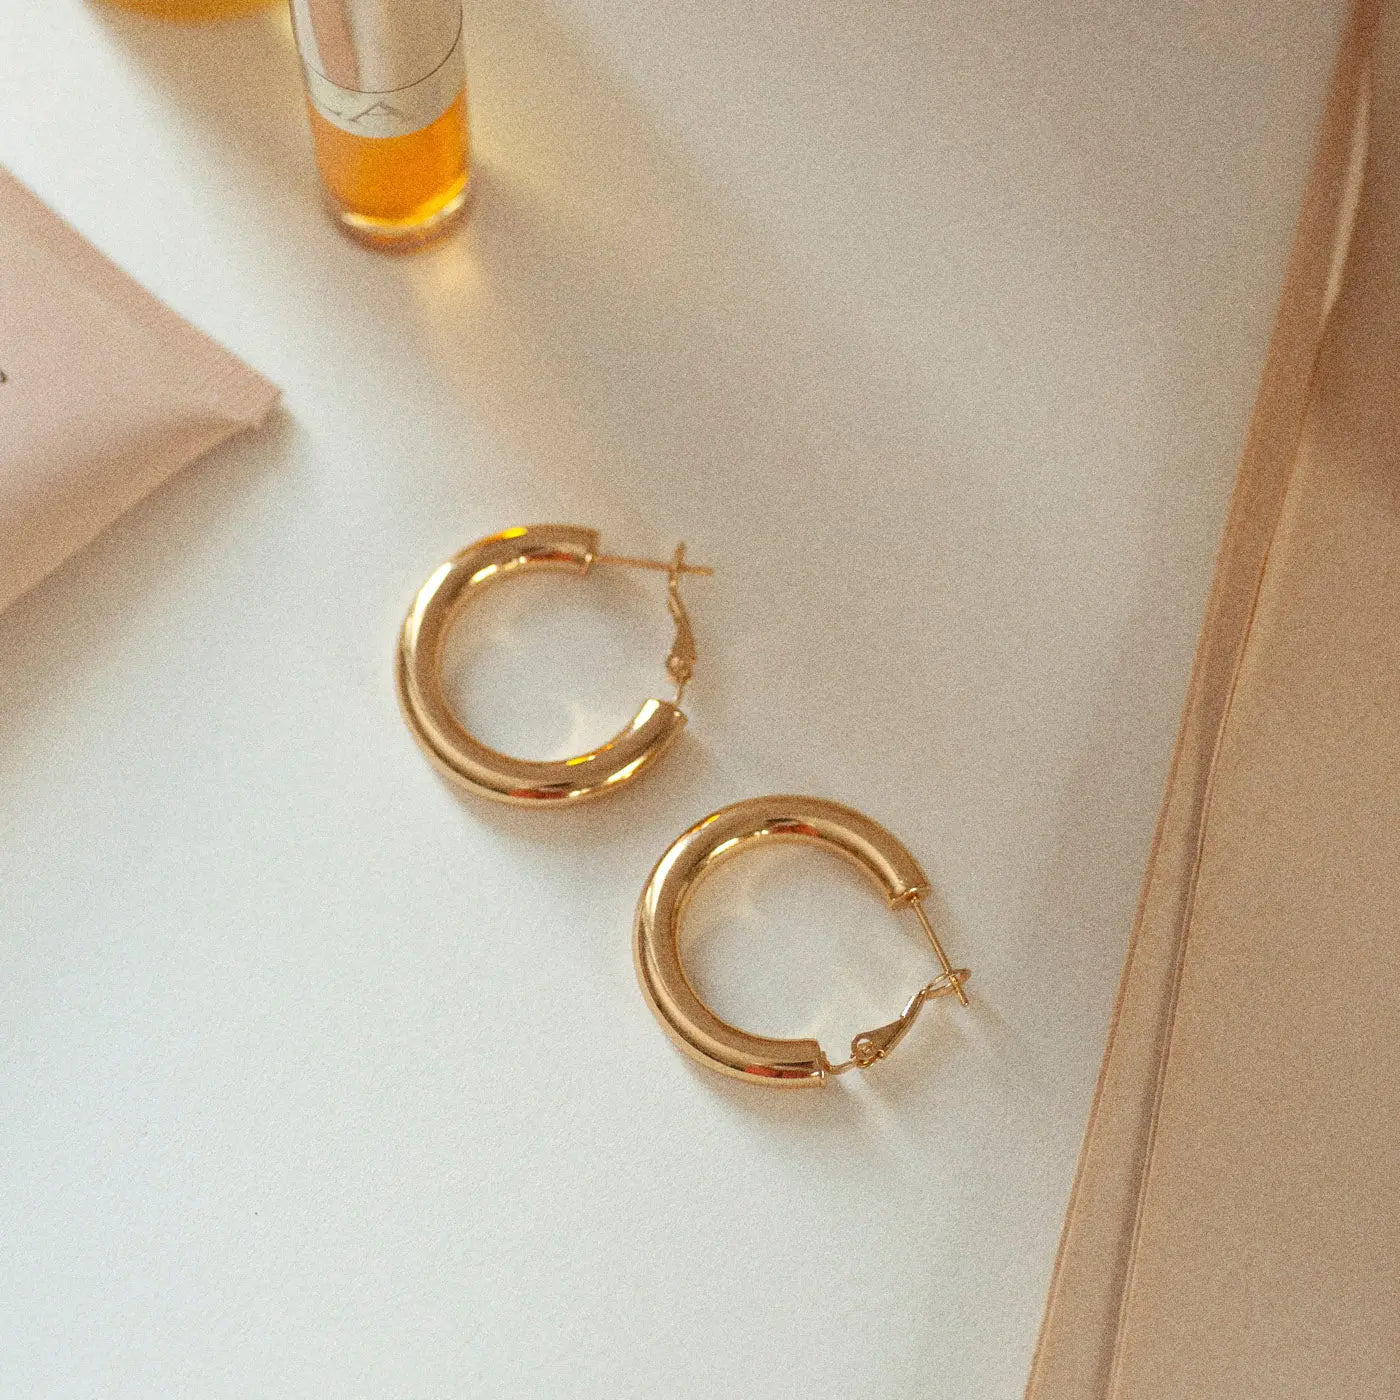 Bianca - Classical Gold Hoop Earrings Stainless Steel